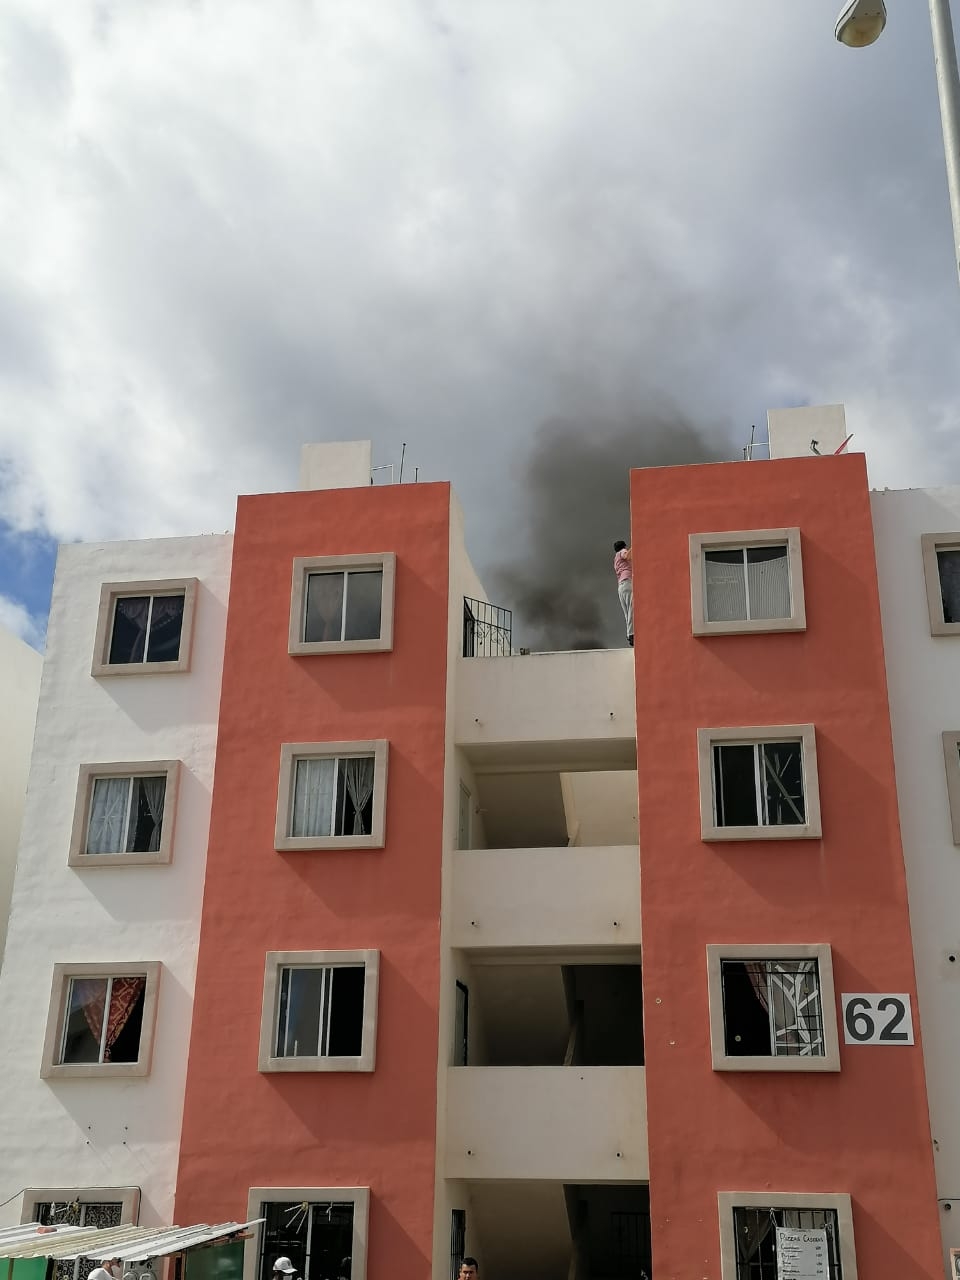 Se registra conato de incendio en fraccionamiento Paseo Kusamil en Cancún